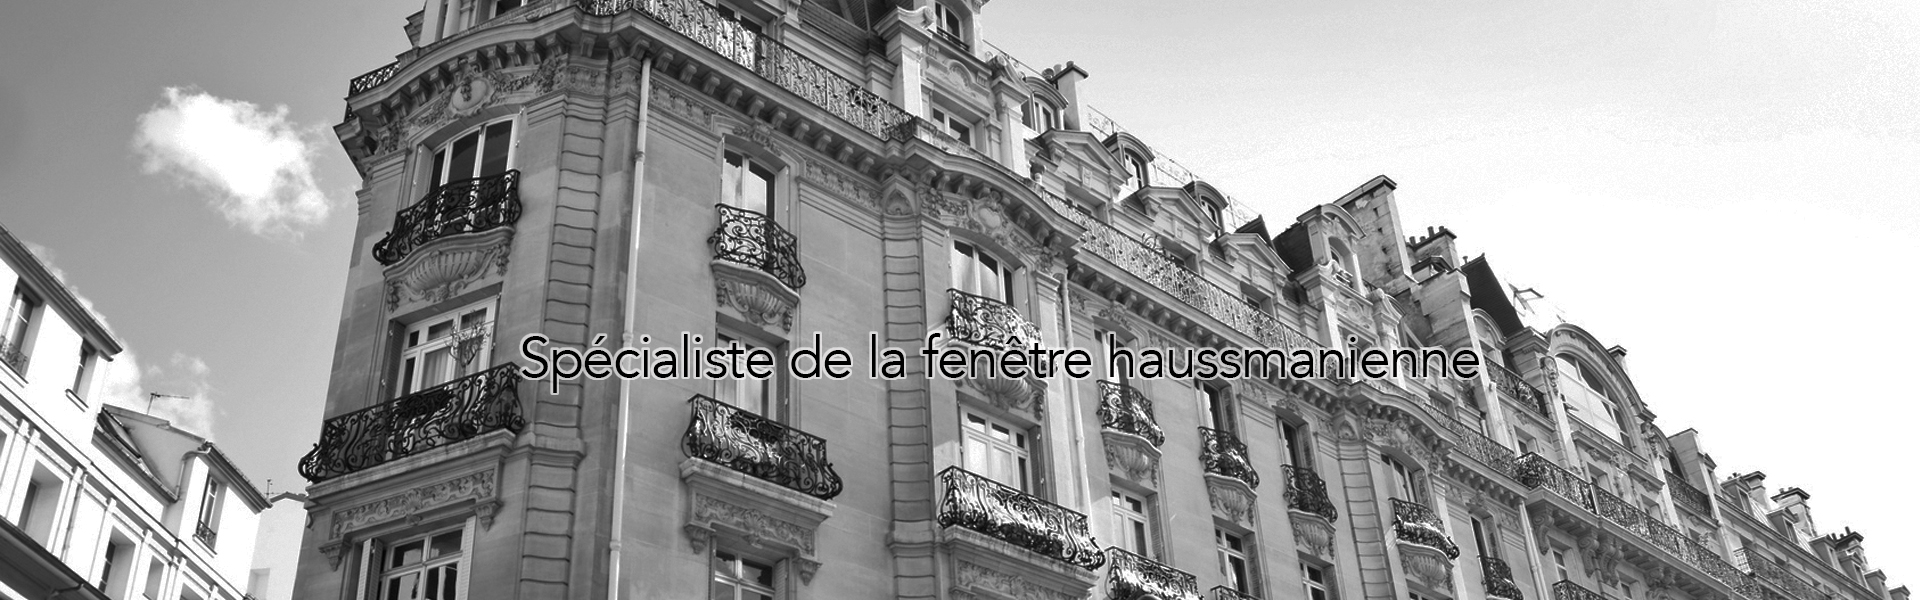 Fenêtres haussmanniennes Paris - La Fermeture Parisienne